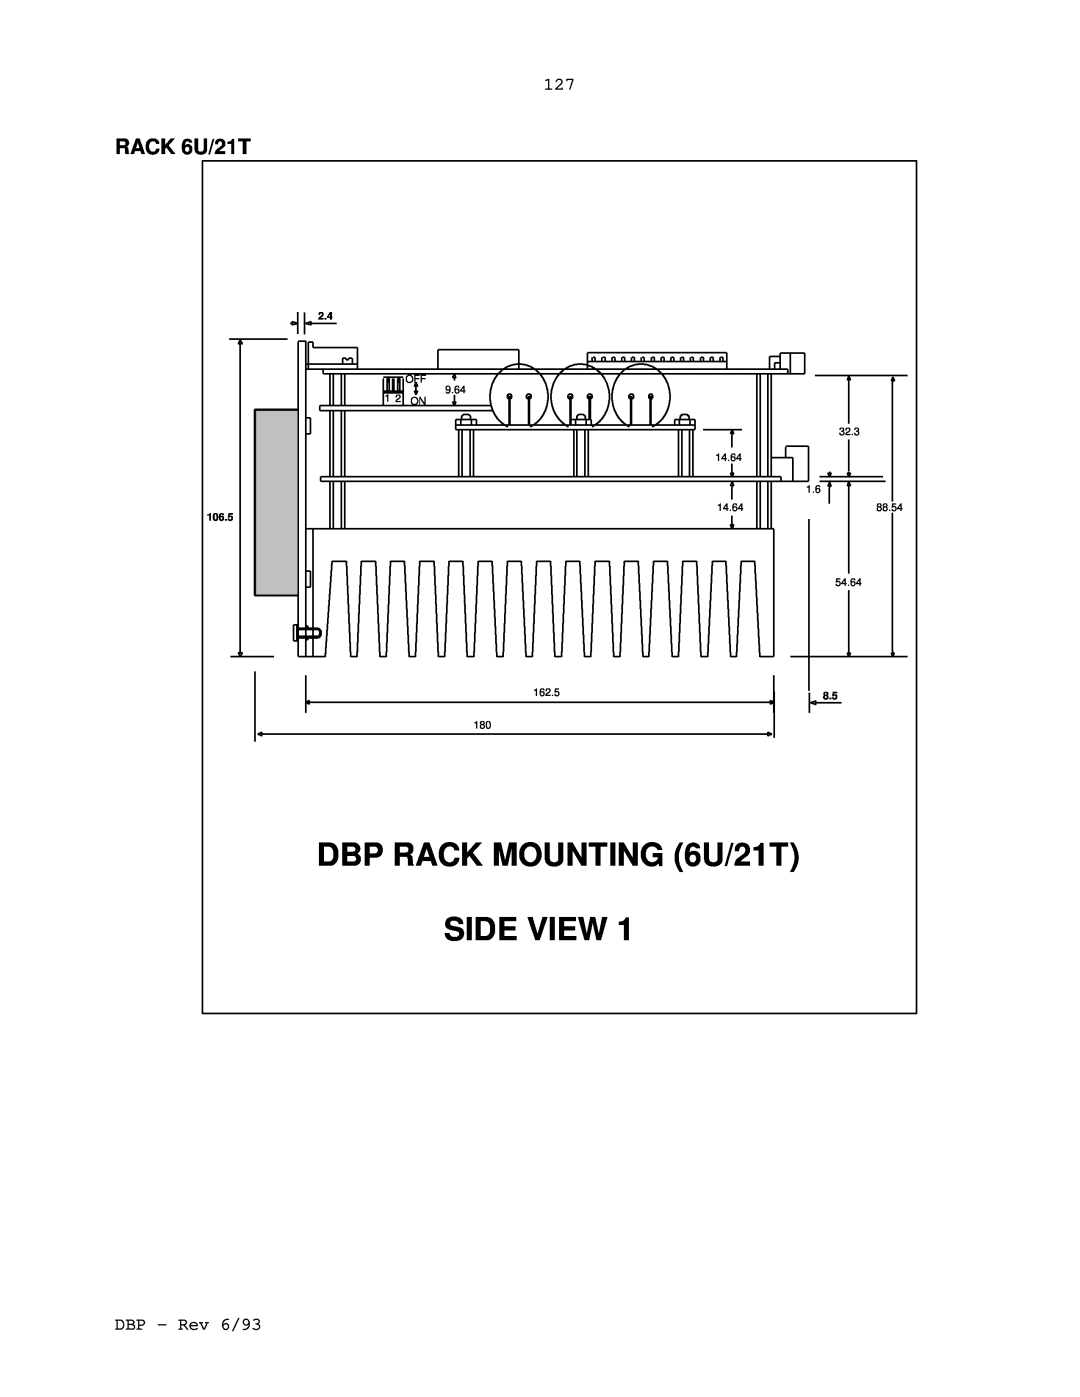 Elmo DBP SERIES manual DBP RACK MOUNTING 6U/21T, RACK 6U/21T, Side View 